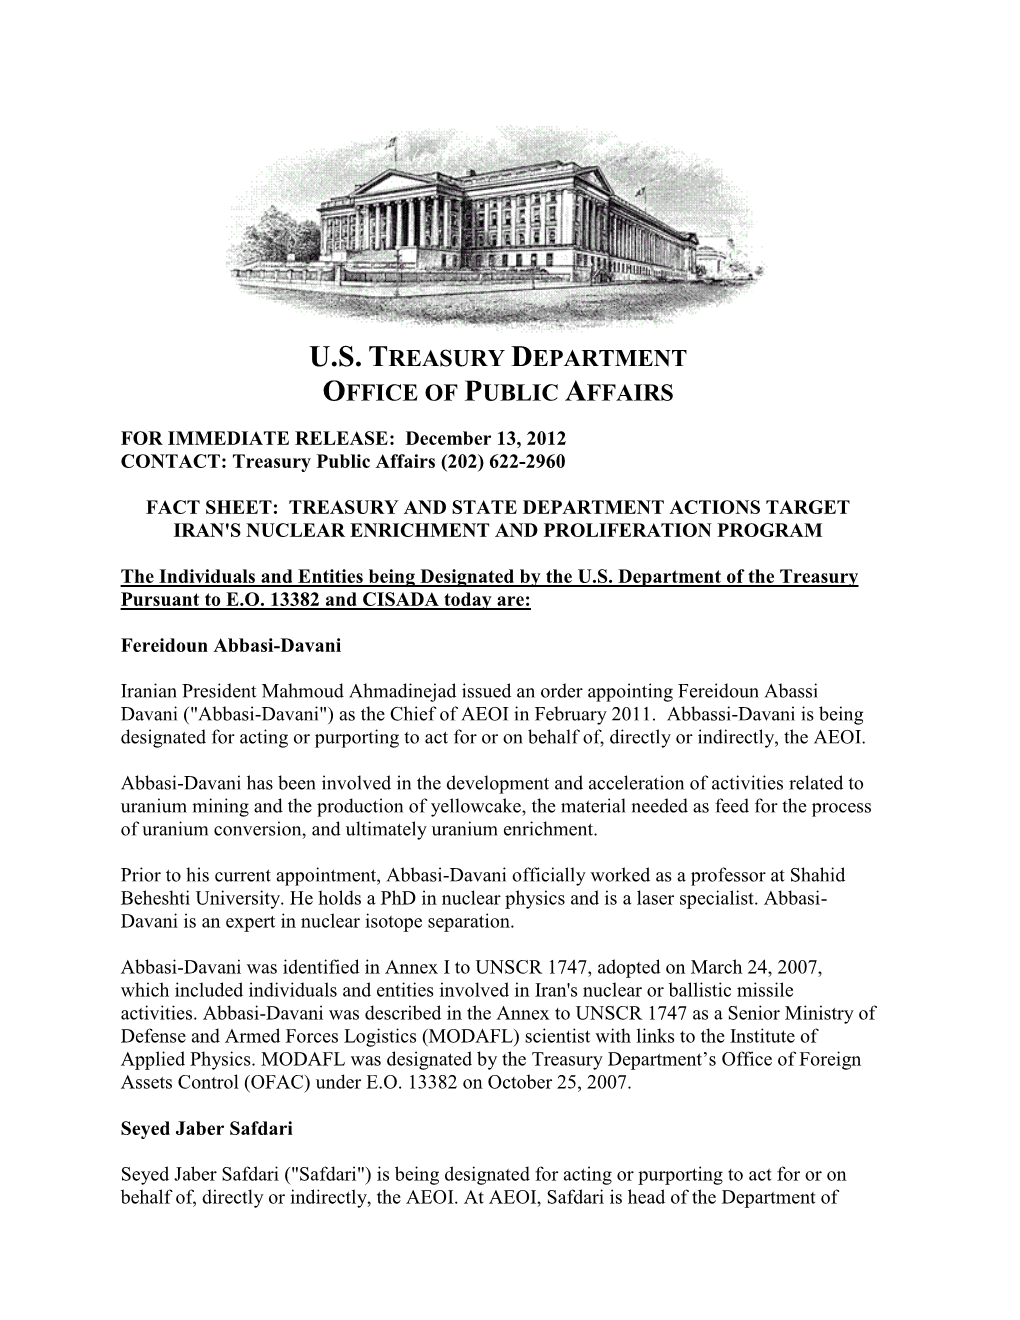 U.S. Treasury Department Office of Public Affairs